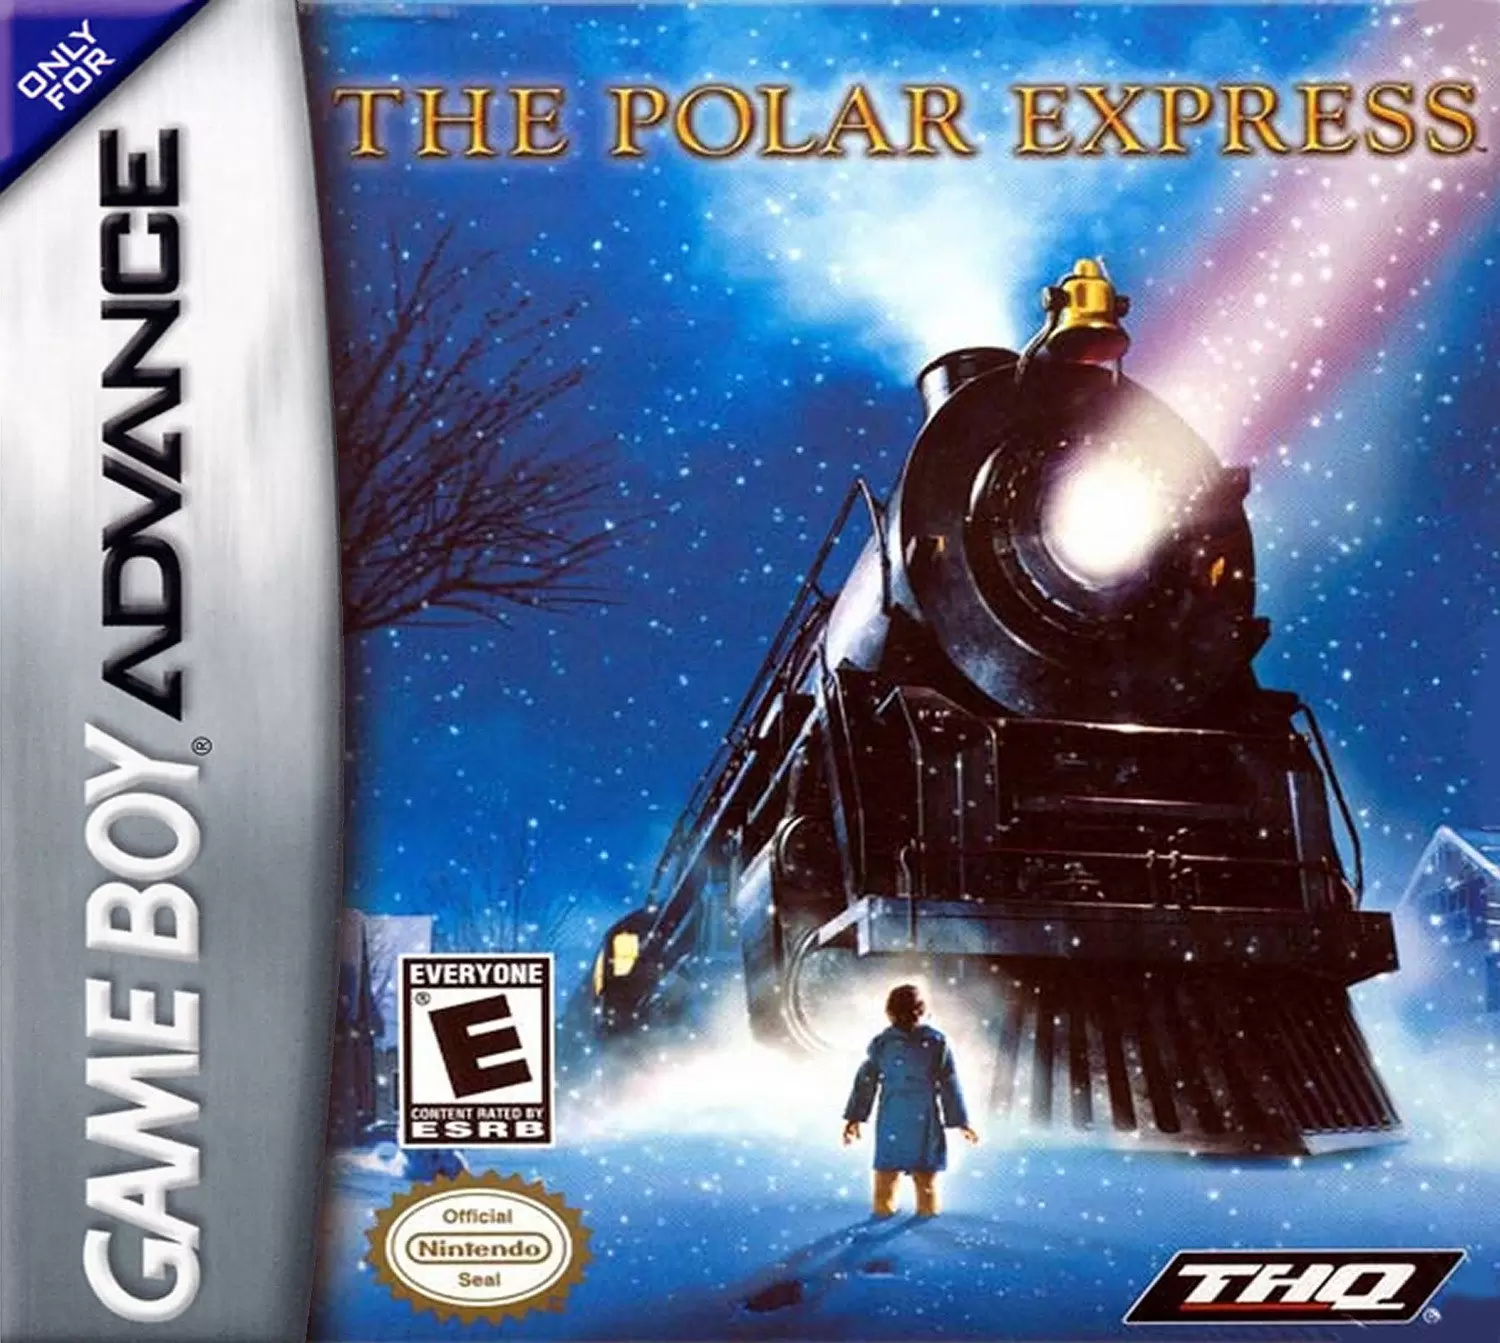 Game Boy Advance Games - The Polar Express